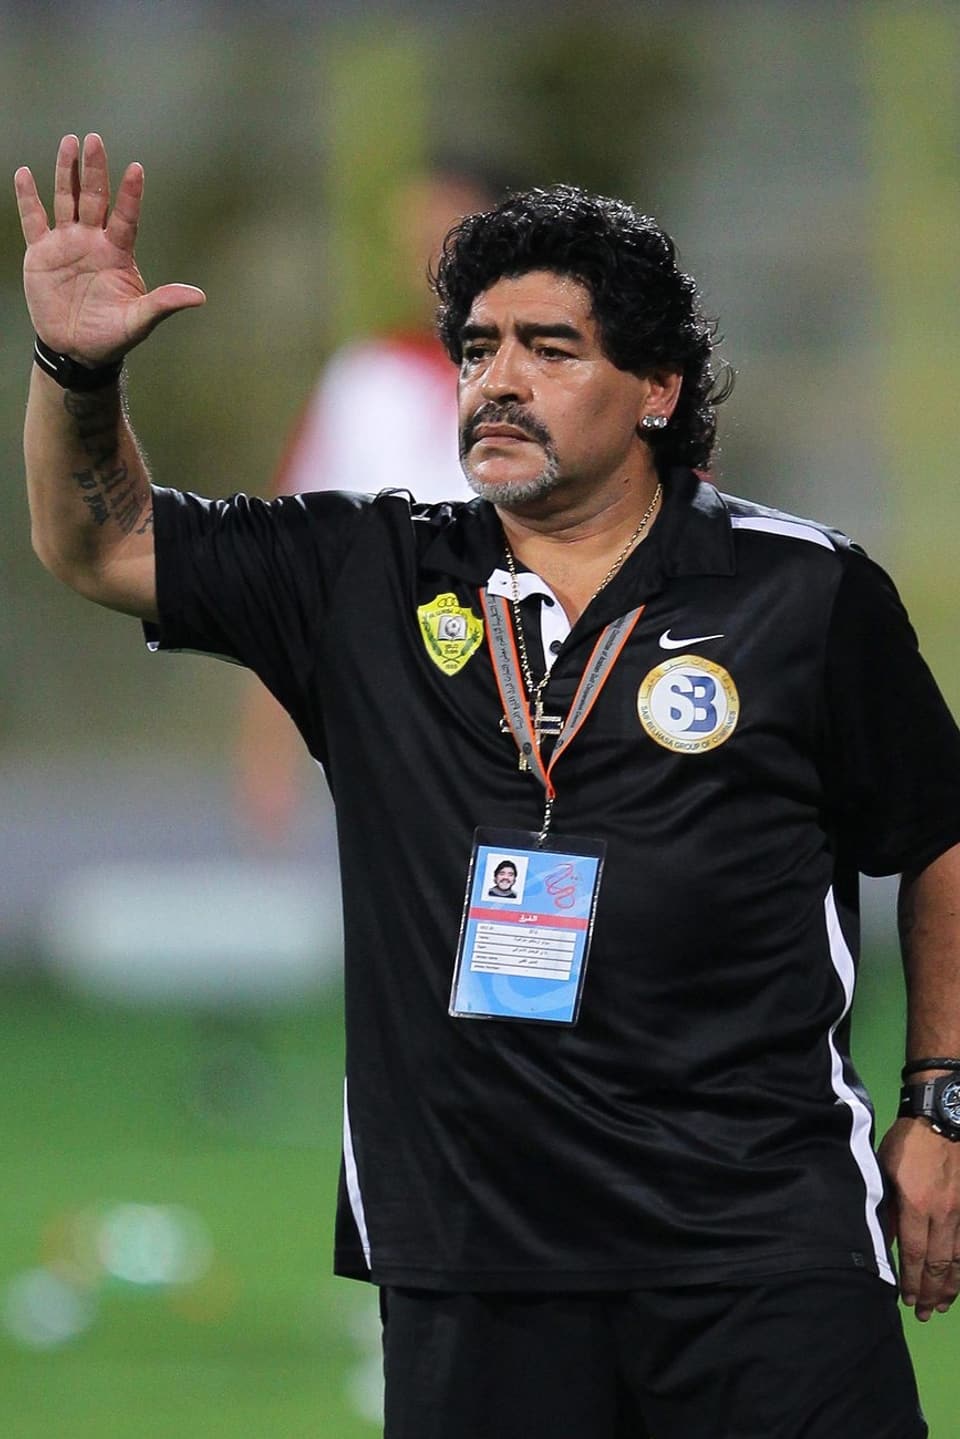 Diego Maradona mit erhobener Hand auf dem Spielfeld